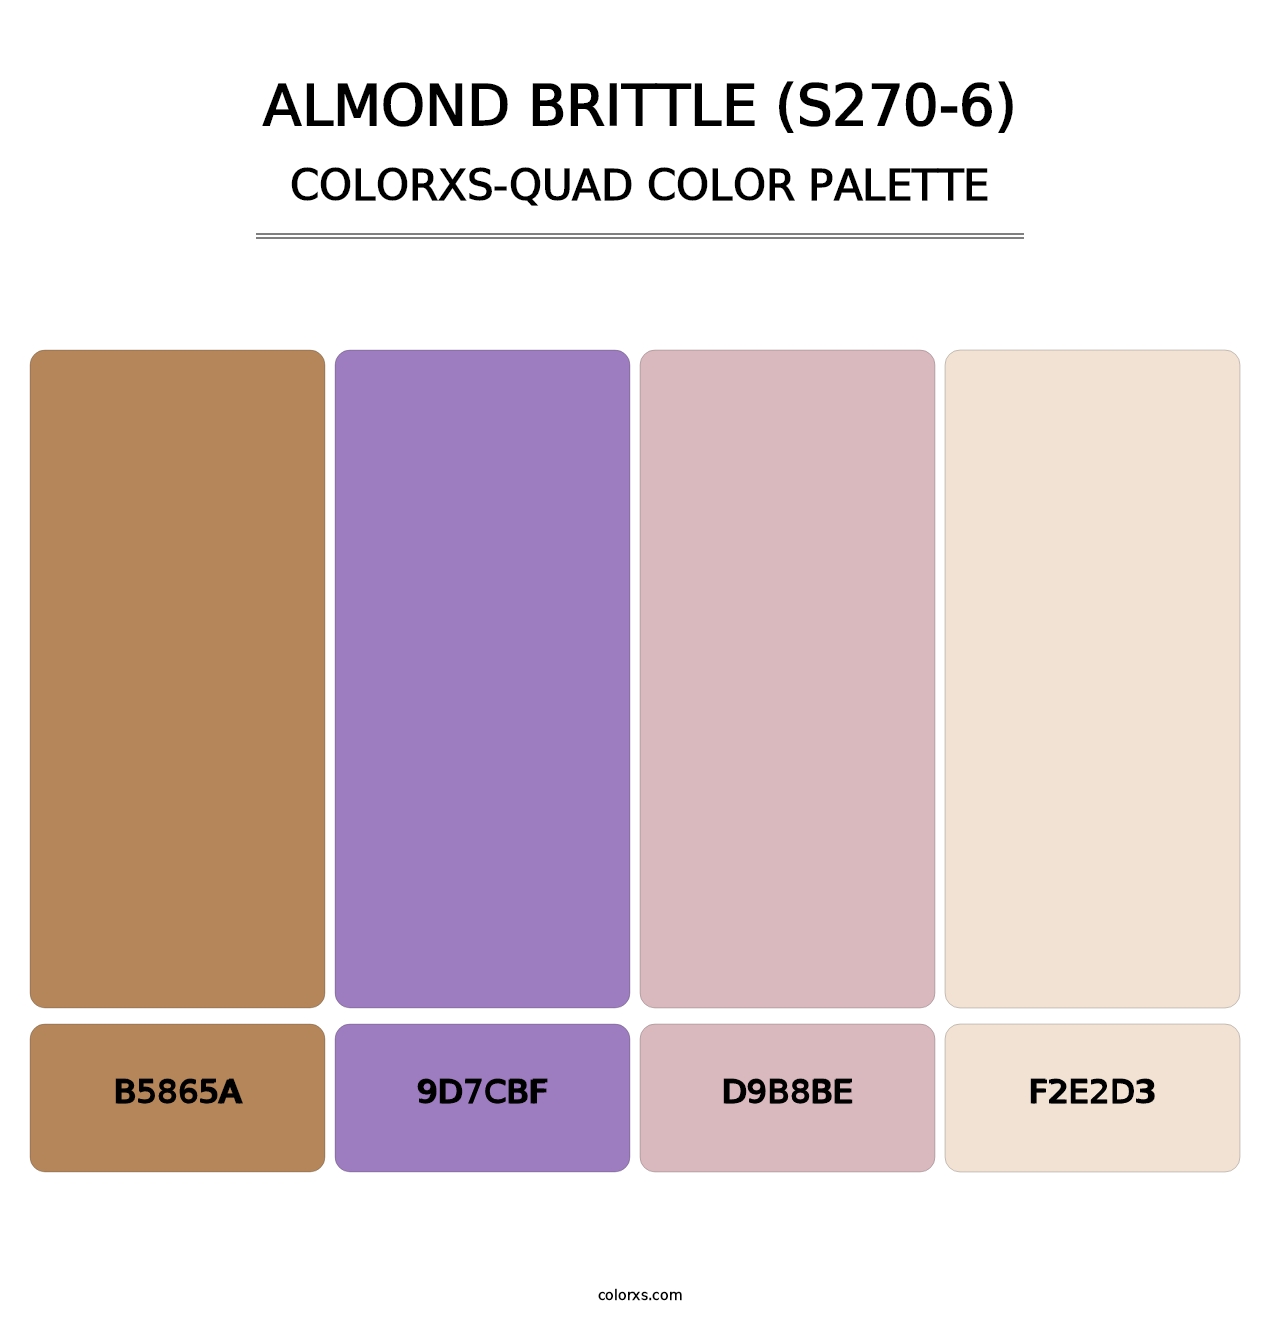 Almond Brittle (S270-6) - Colorxs Quad Palette